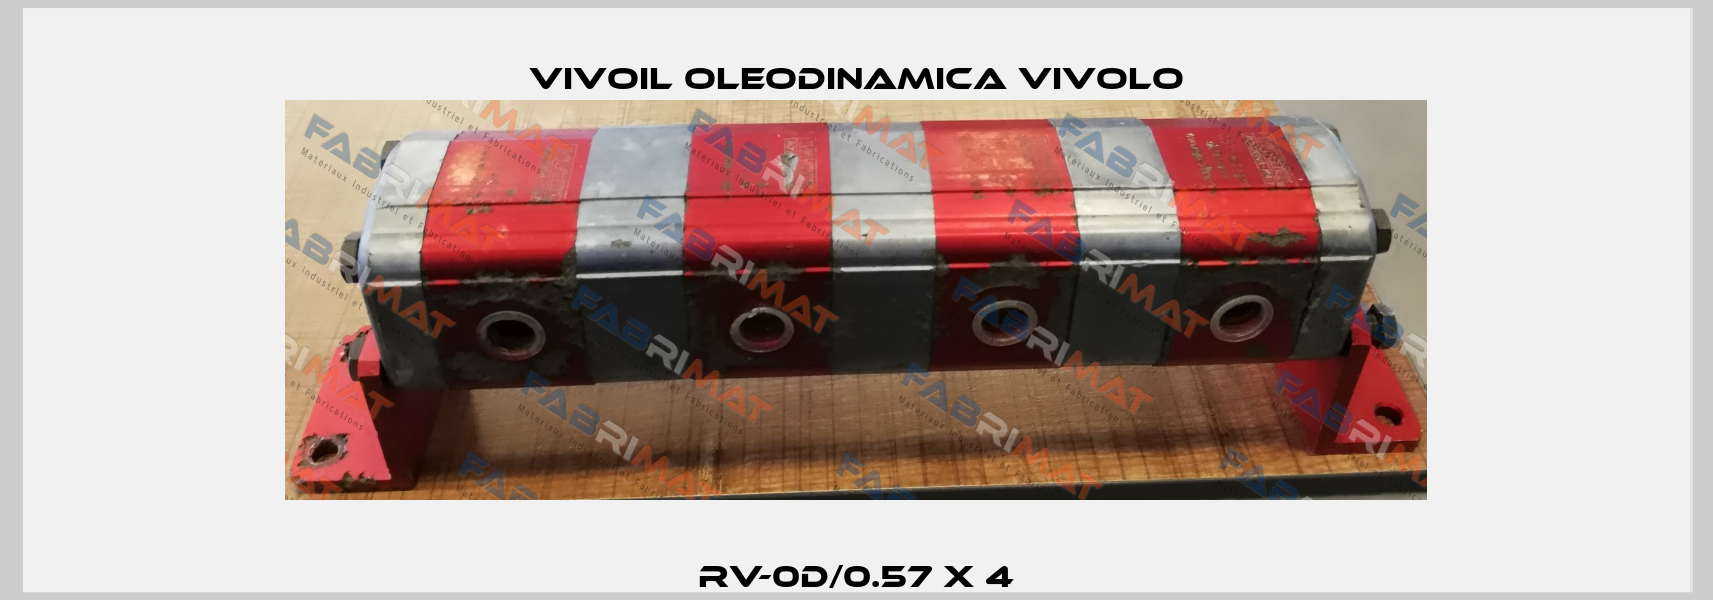 RV-0D/0.57 x 4 Vivoil Oleodinamica Vivolo